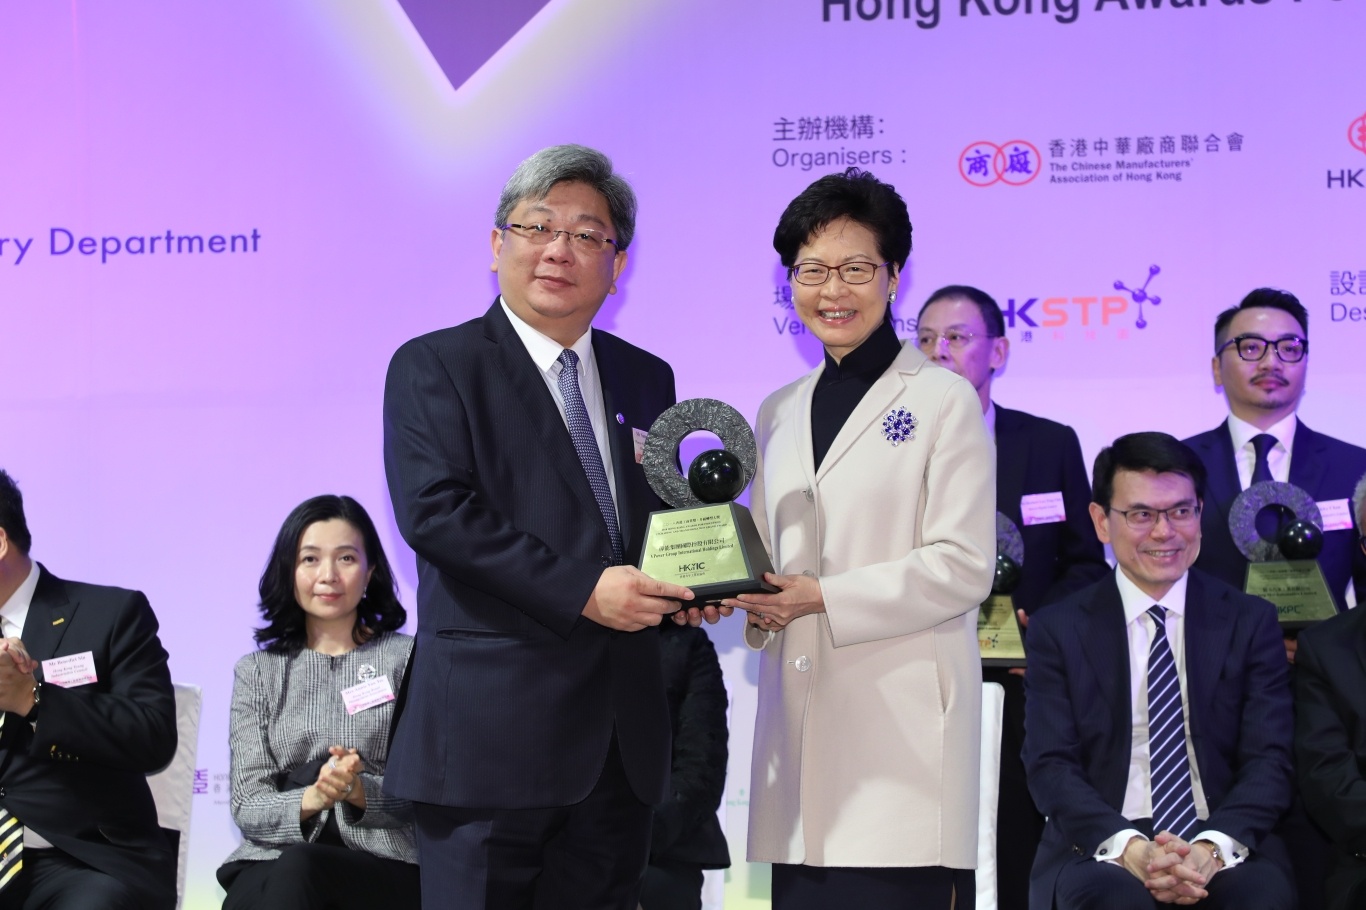 Hong Kong Awards for Industries